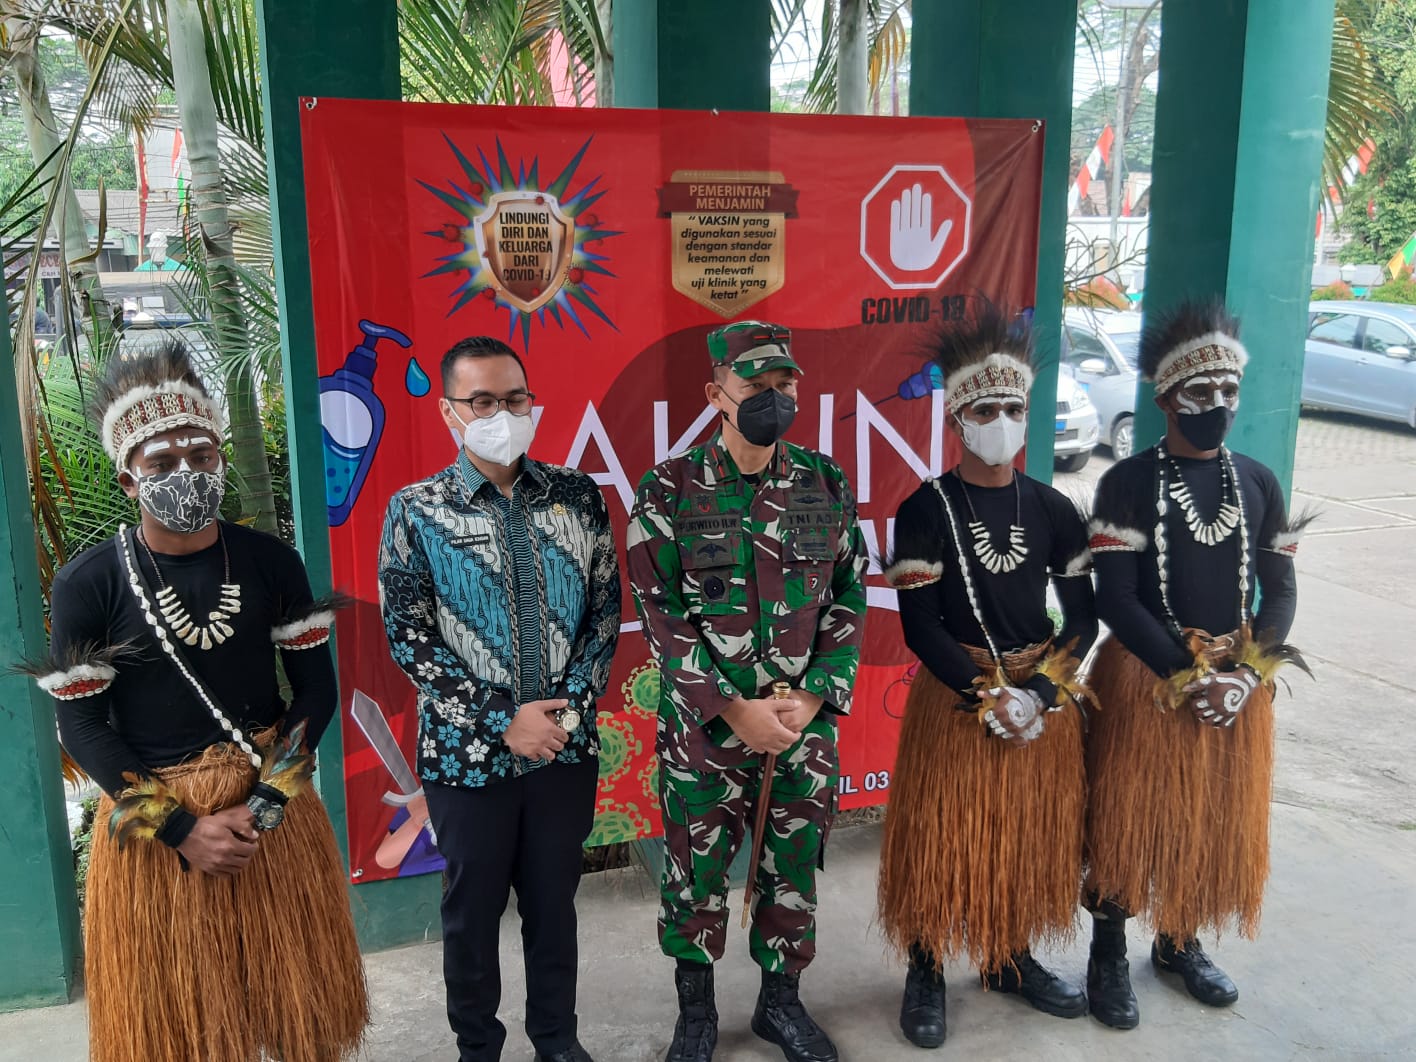 	TNI Bintara Otonomi Khusus asal Papua yang berdandan lengkap dengan pakaian adat saat berswa foto bersama di Kantor Kecamatan Serpong, Kota Tangerang Selatan,Kamis, 19 Agustus 2021.